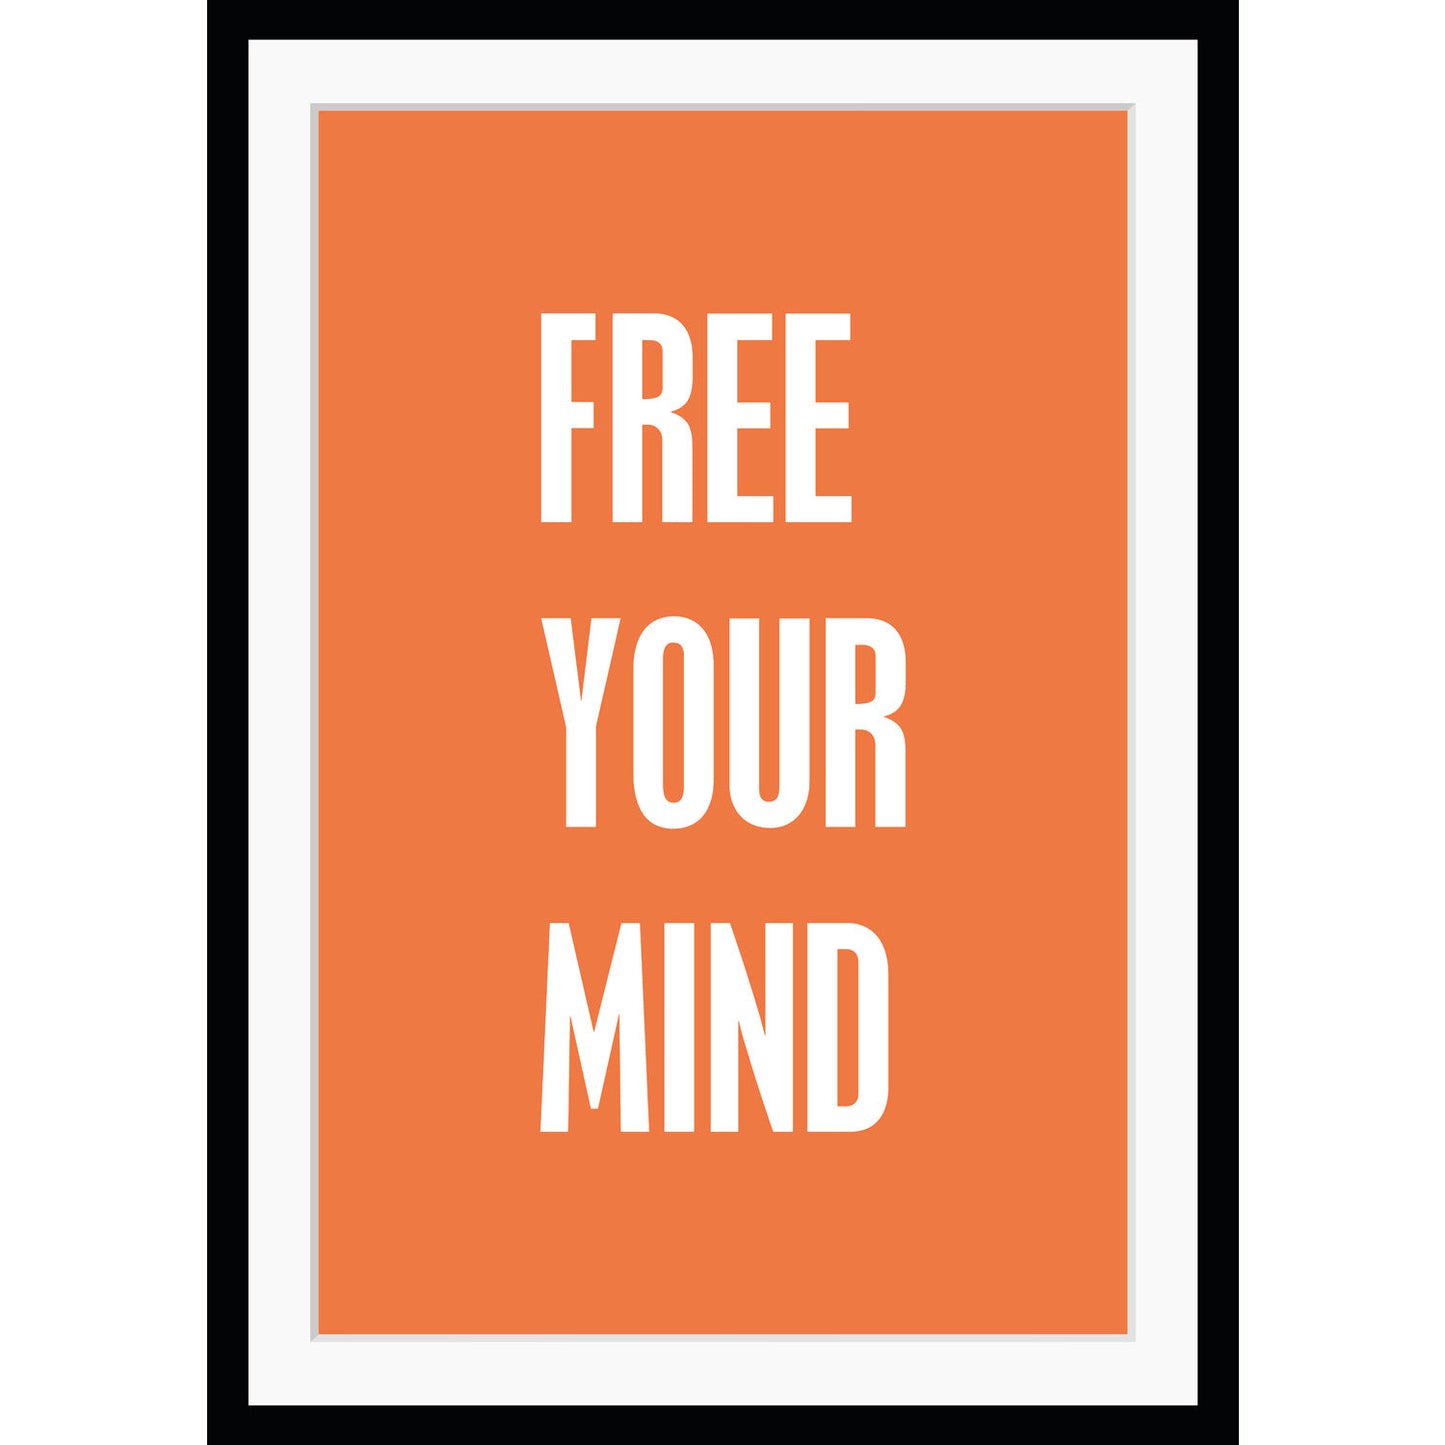 Rahmenbild - Free your mind